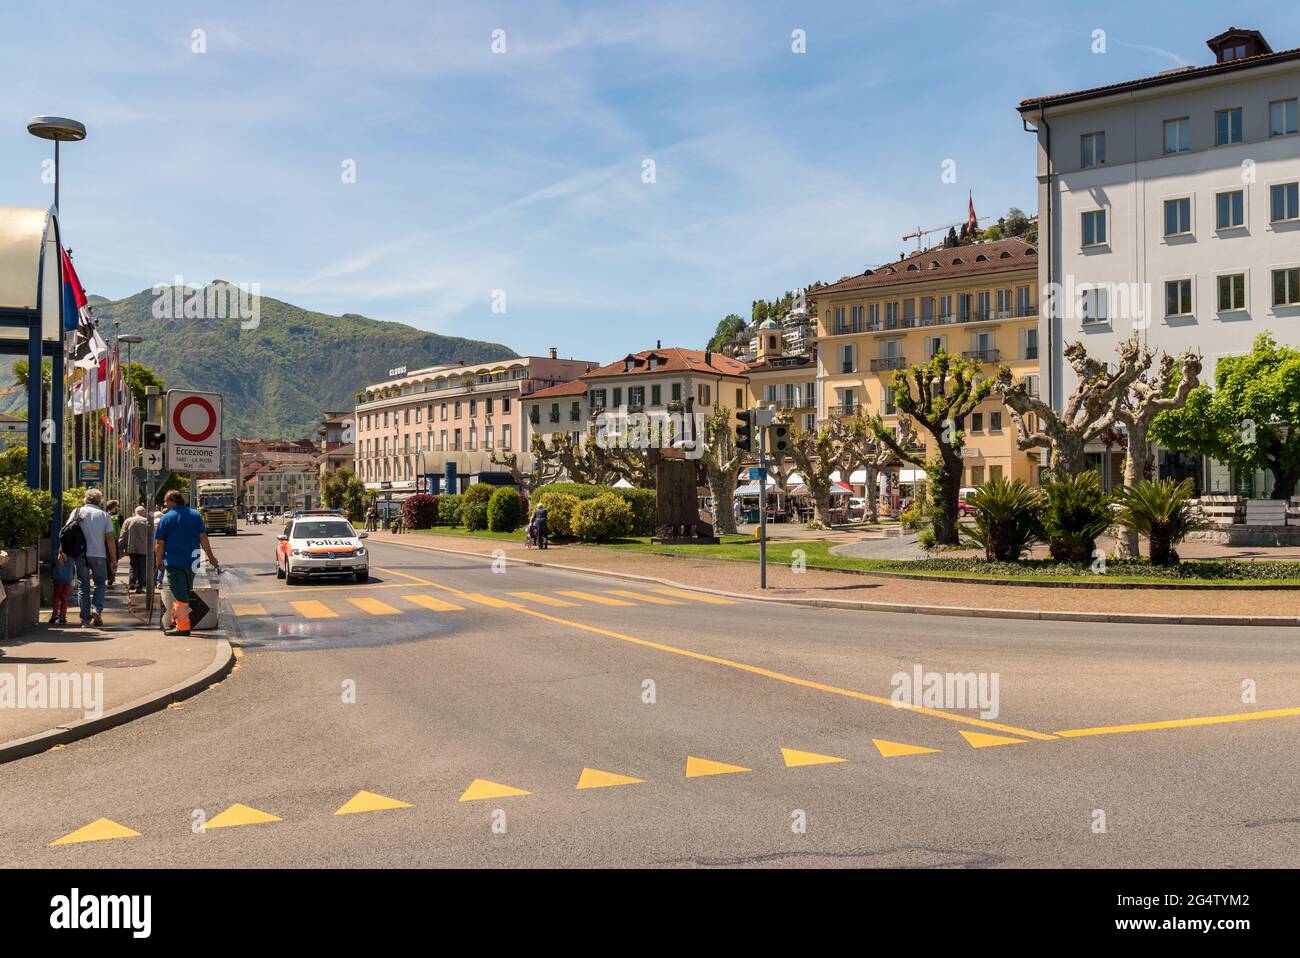 Locarno, Ticino, Switzerland - May 4, 2016: Main street in the center of Locarno city. Cityscape landscape. Stock Photo